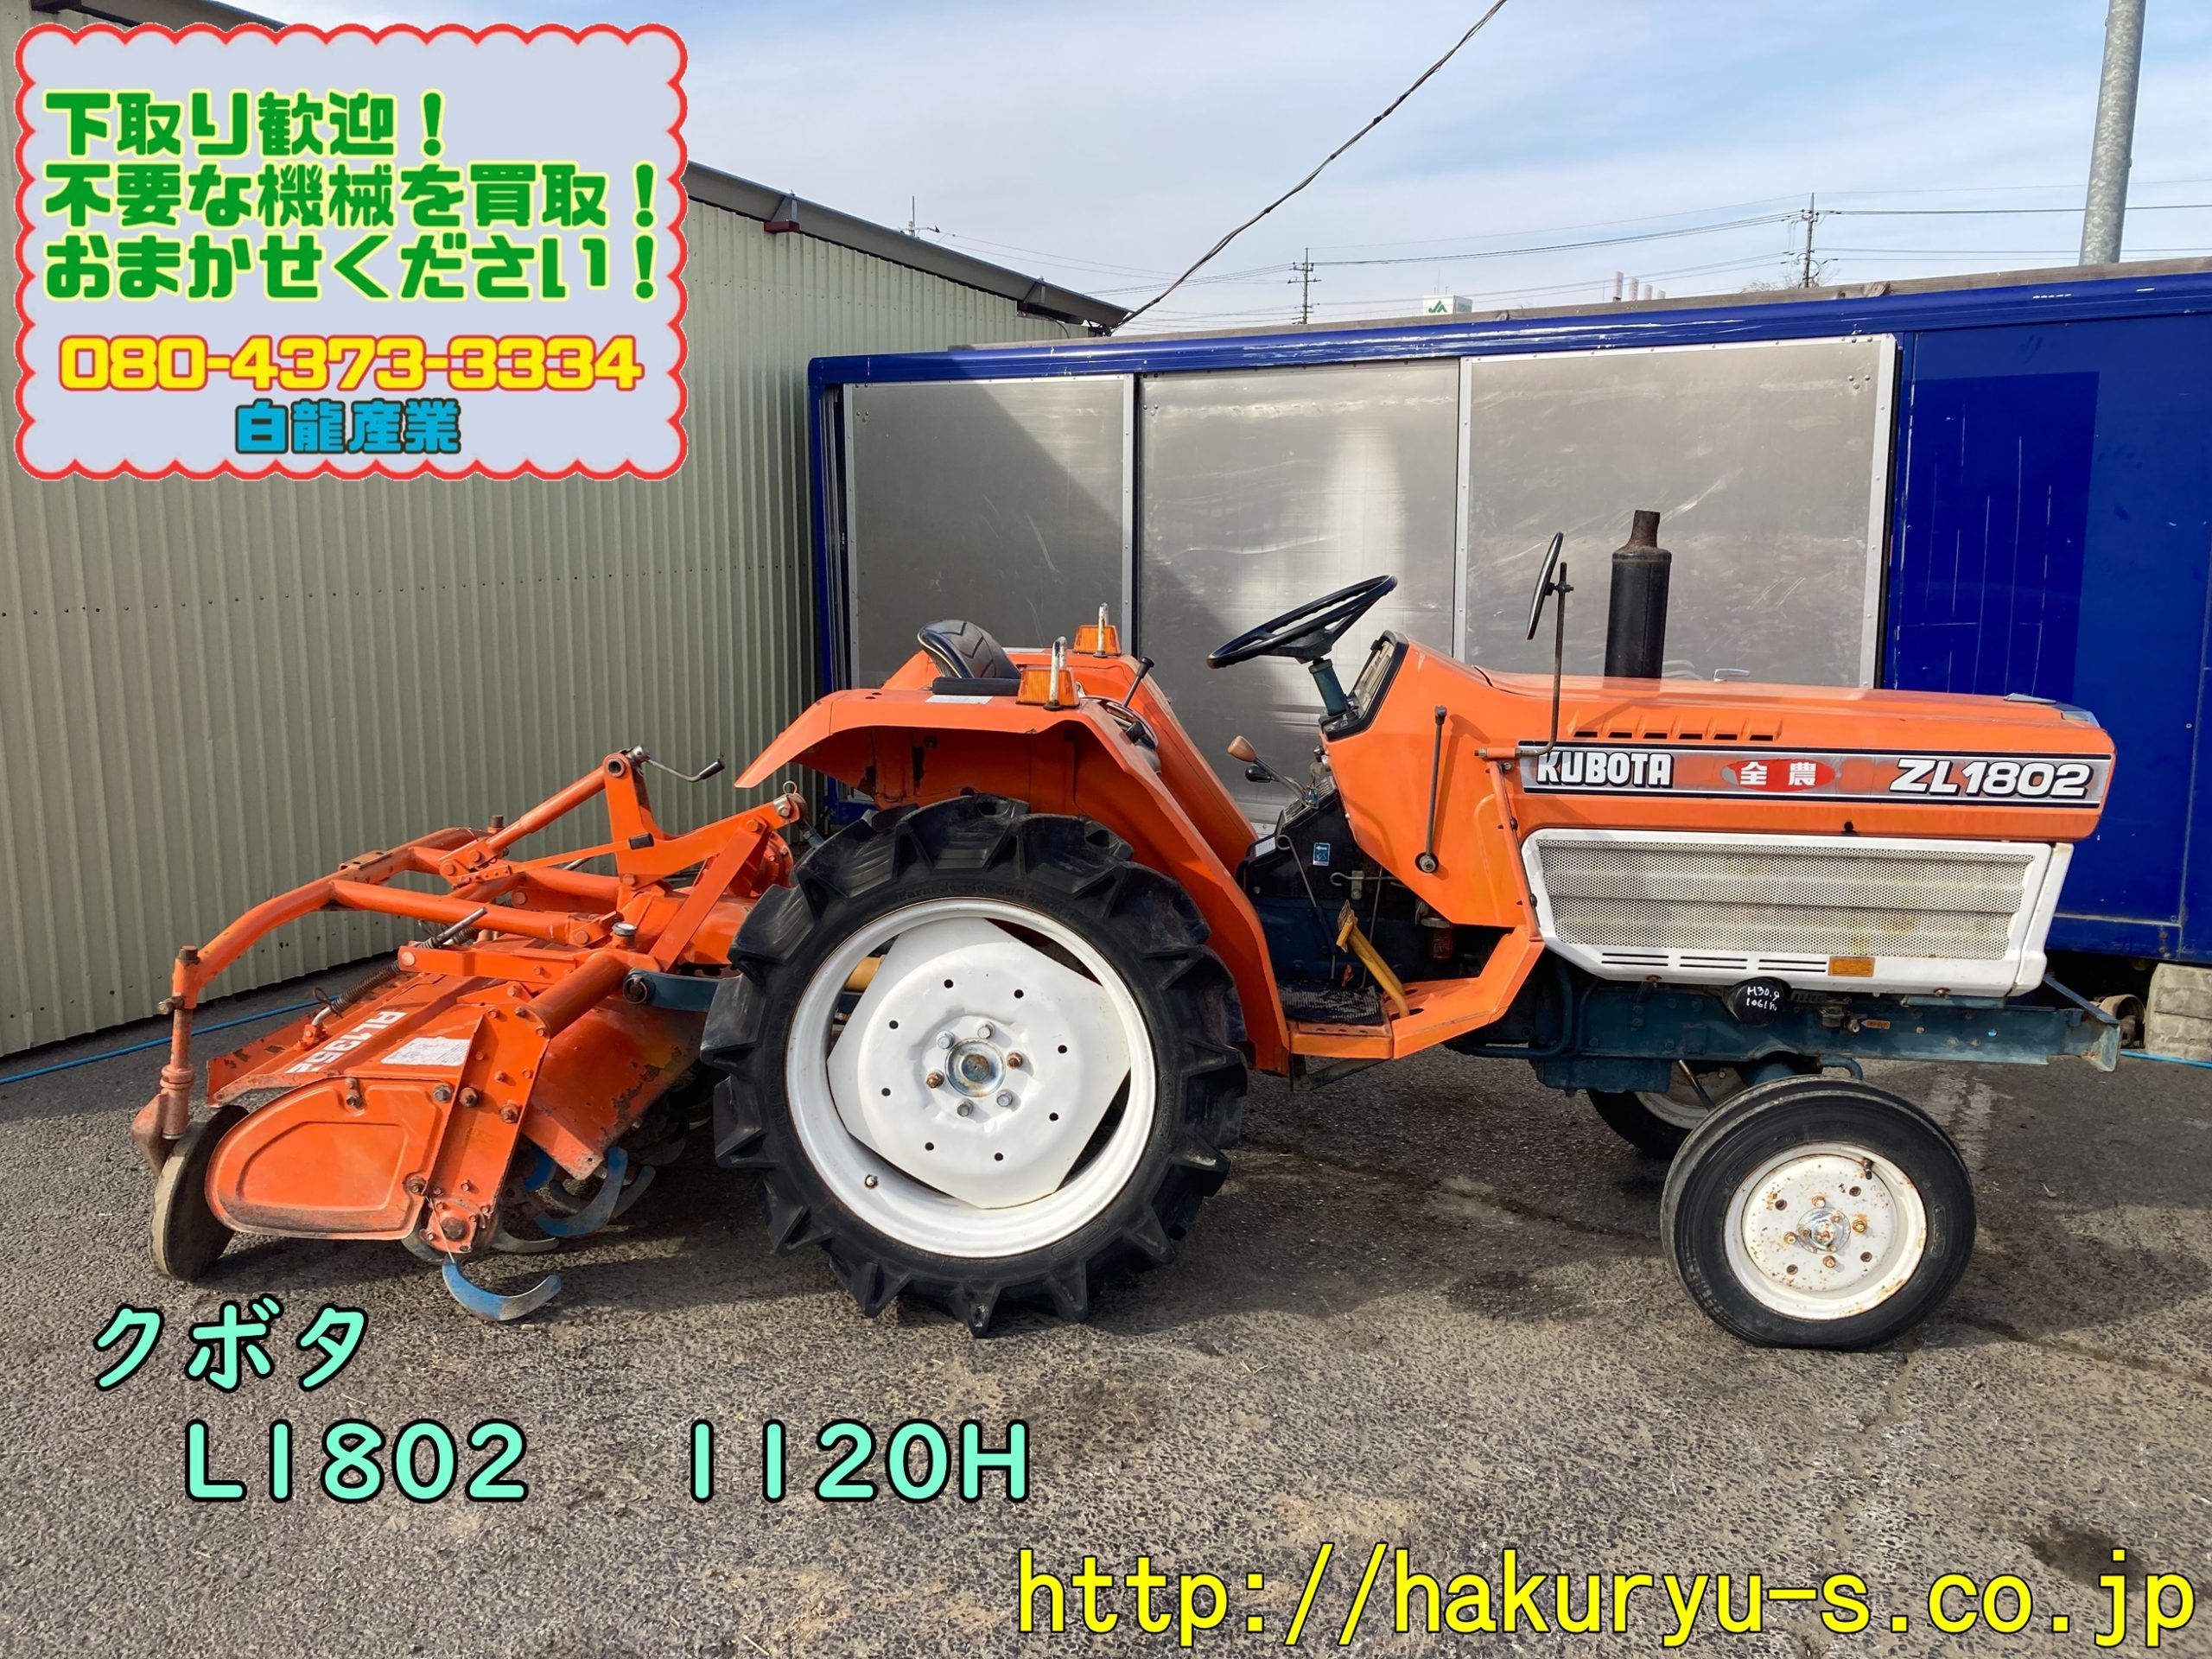 愛知県 クボタ トラクター ZL1802 L1802 18馬力 997h RL1352 